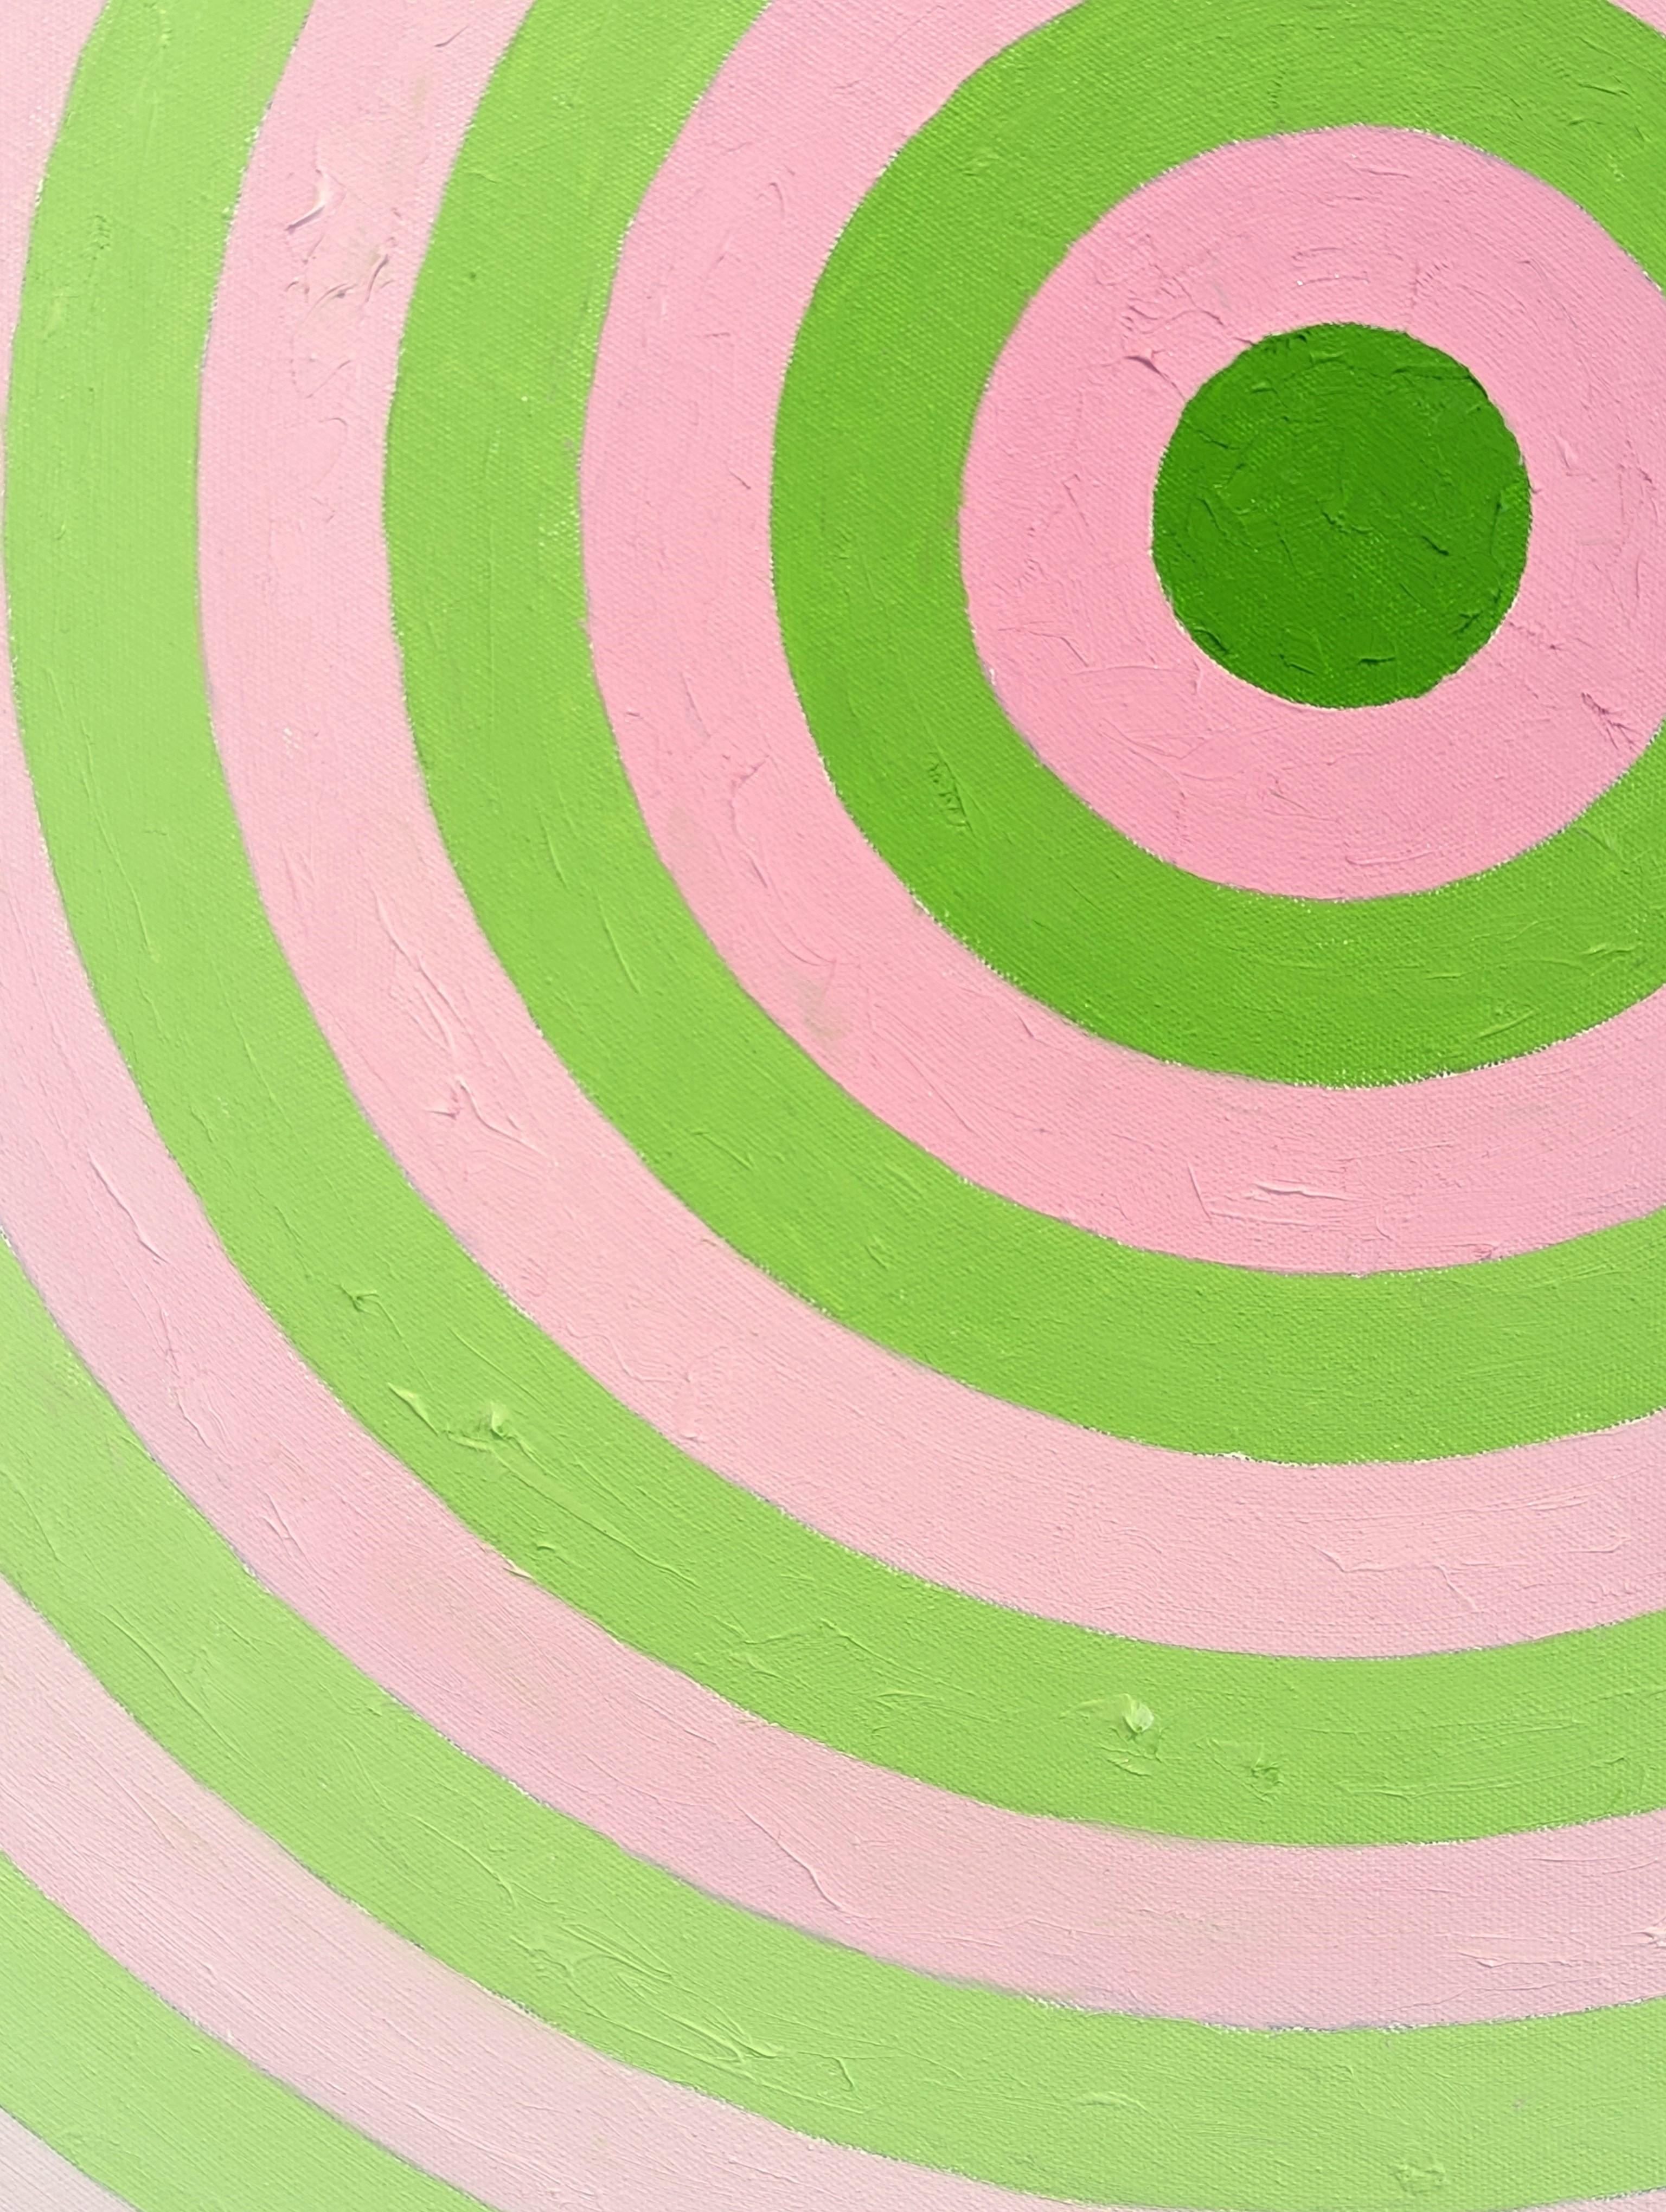 Peinture circulaire contemporaine abstraite rose et verte de l'artiste David Hardaker de Houston, TX. Signé, titré et daté par l'artiste au verso. 

Déclaration de l'artiste : L'œuvre est une réponse à la musique.

L'application de la texture et